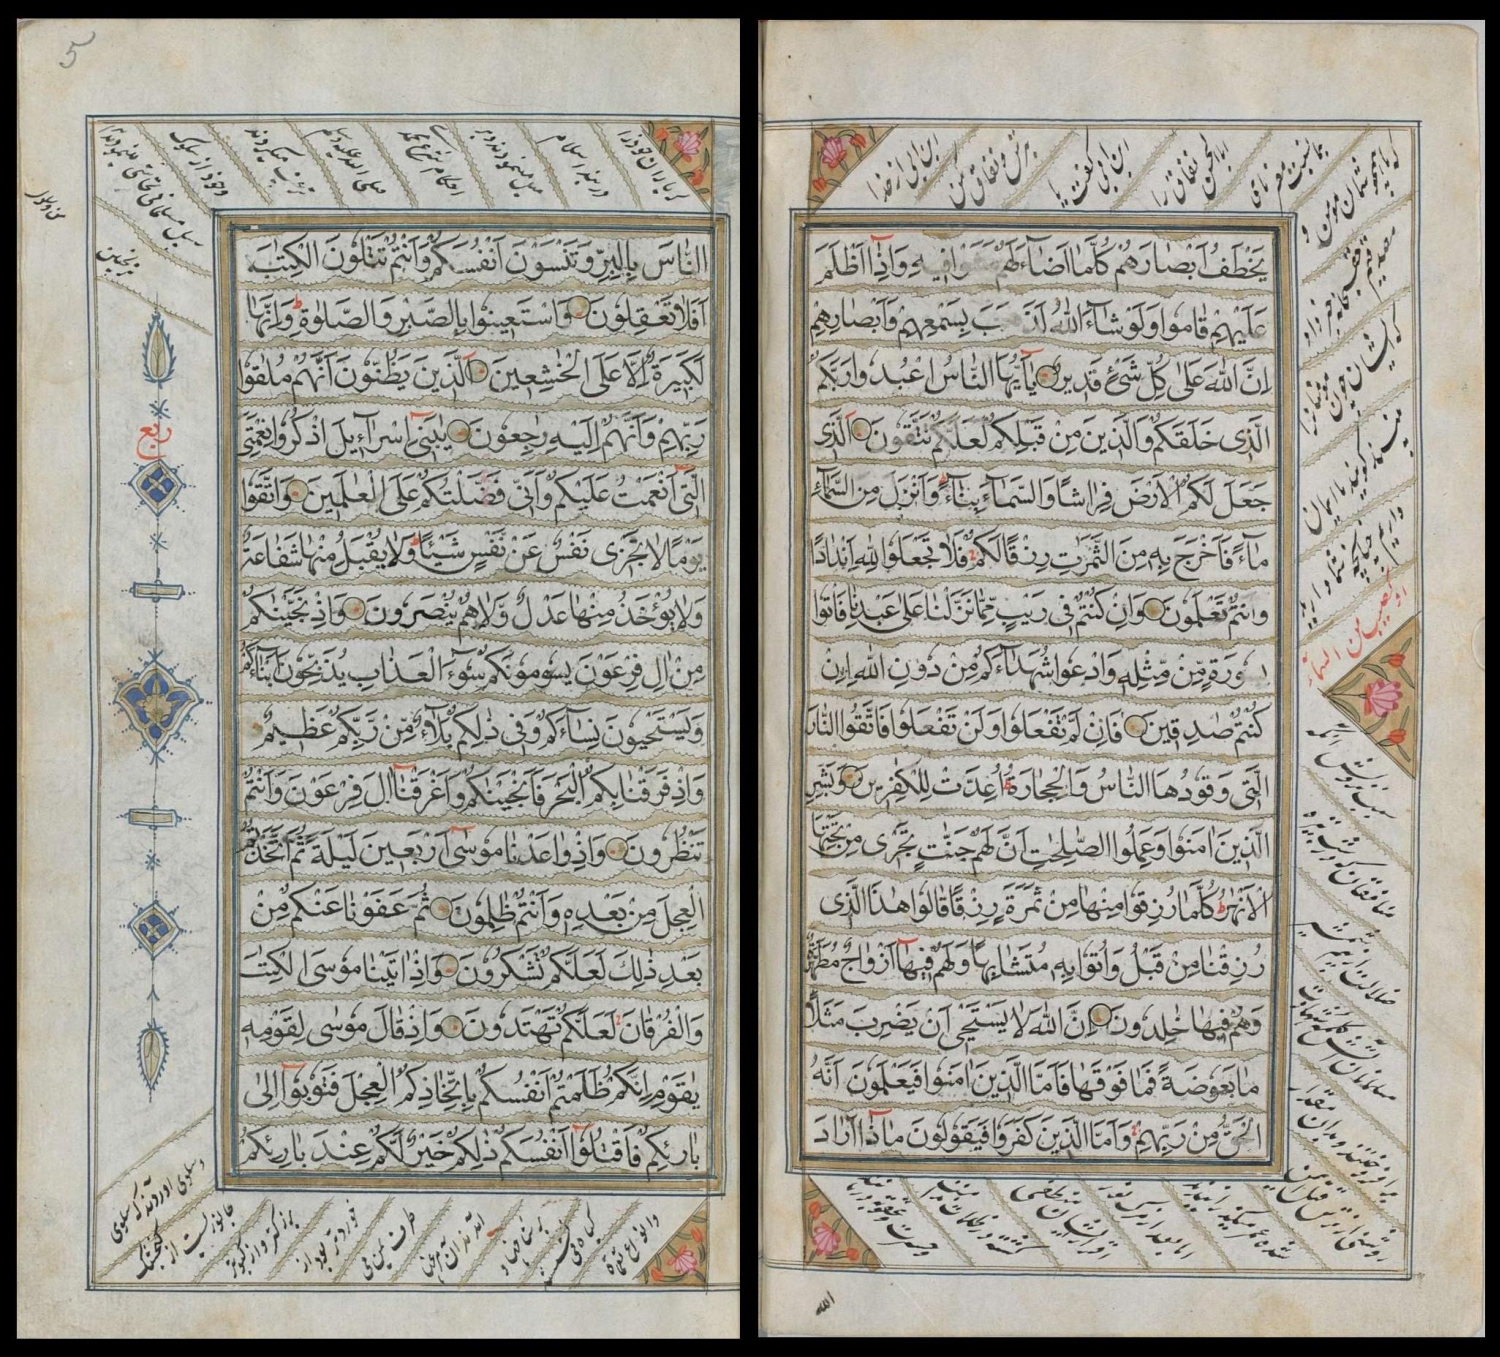 Koran from Persia